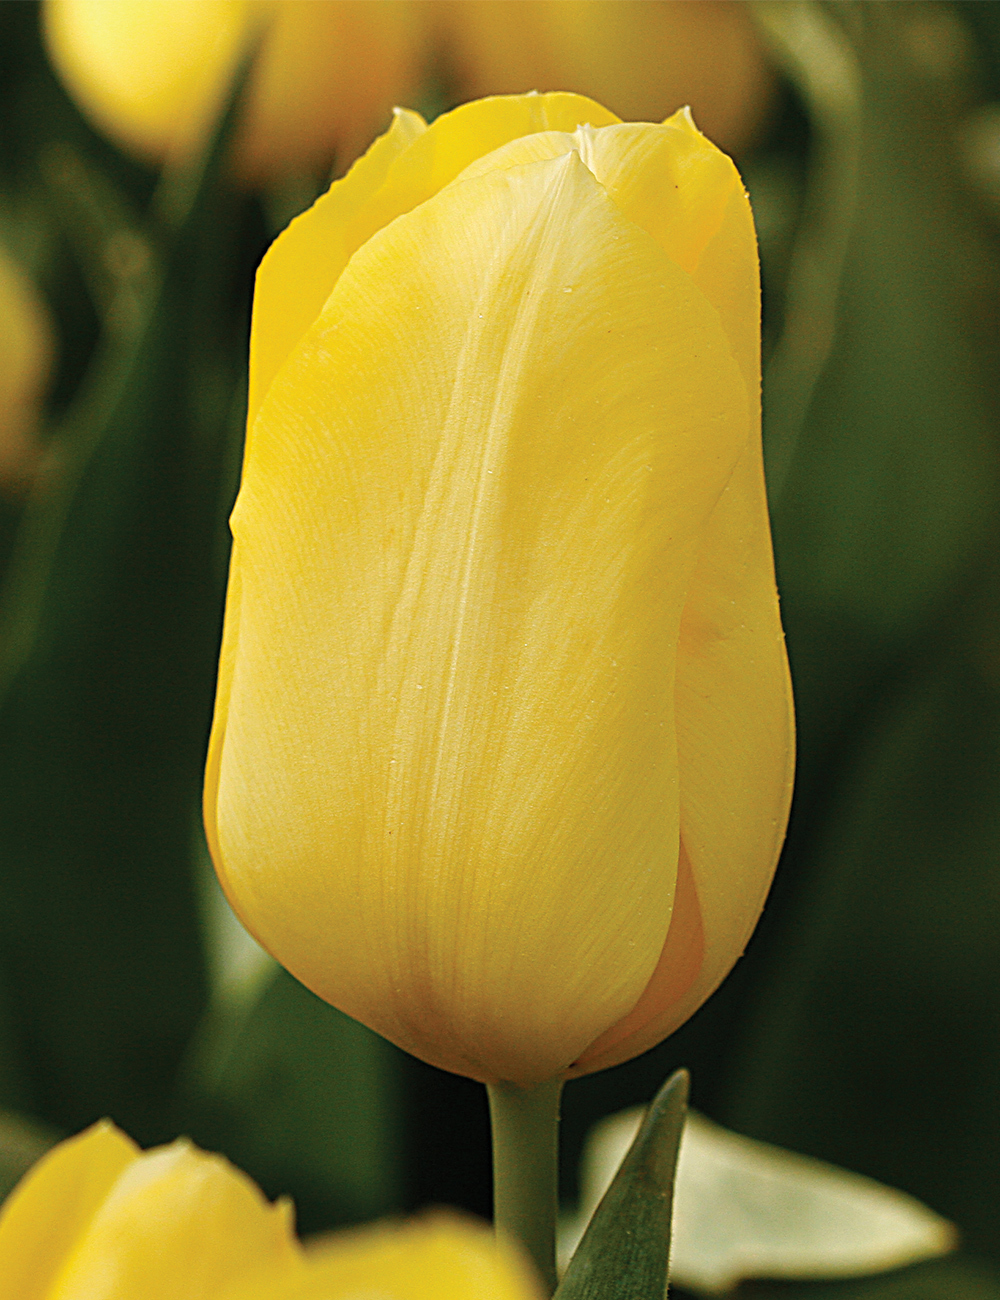 Monet Tulip 'Jan van Nes'